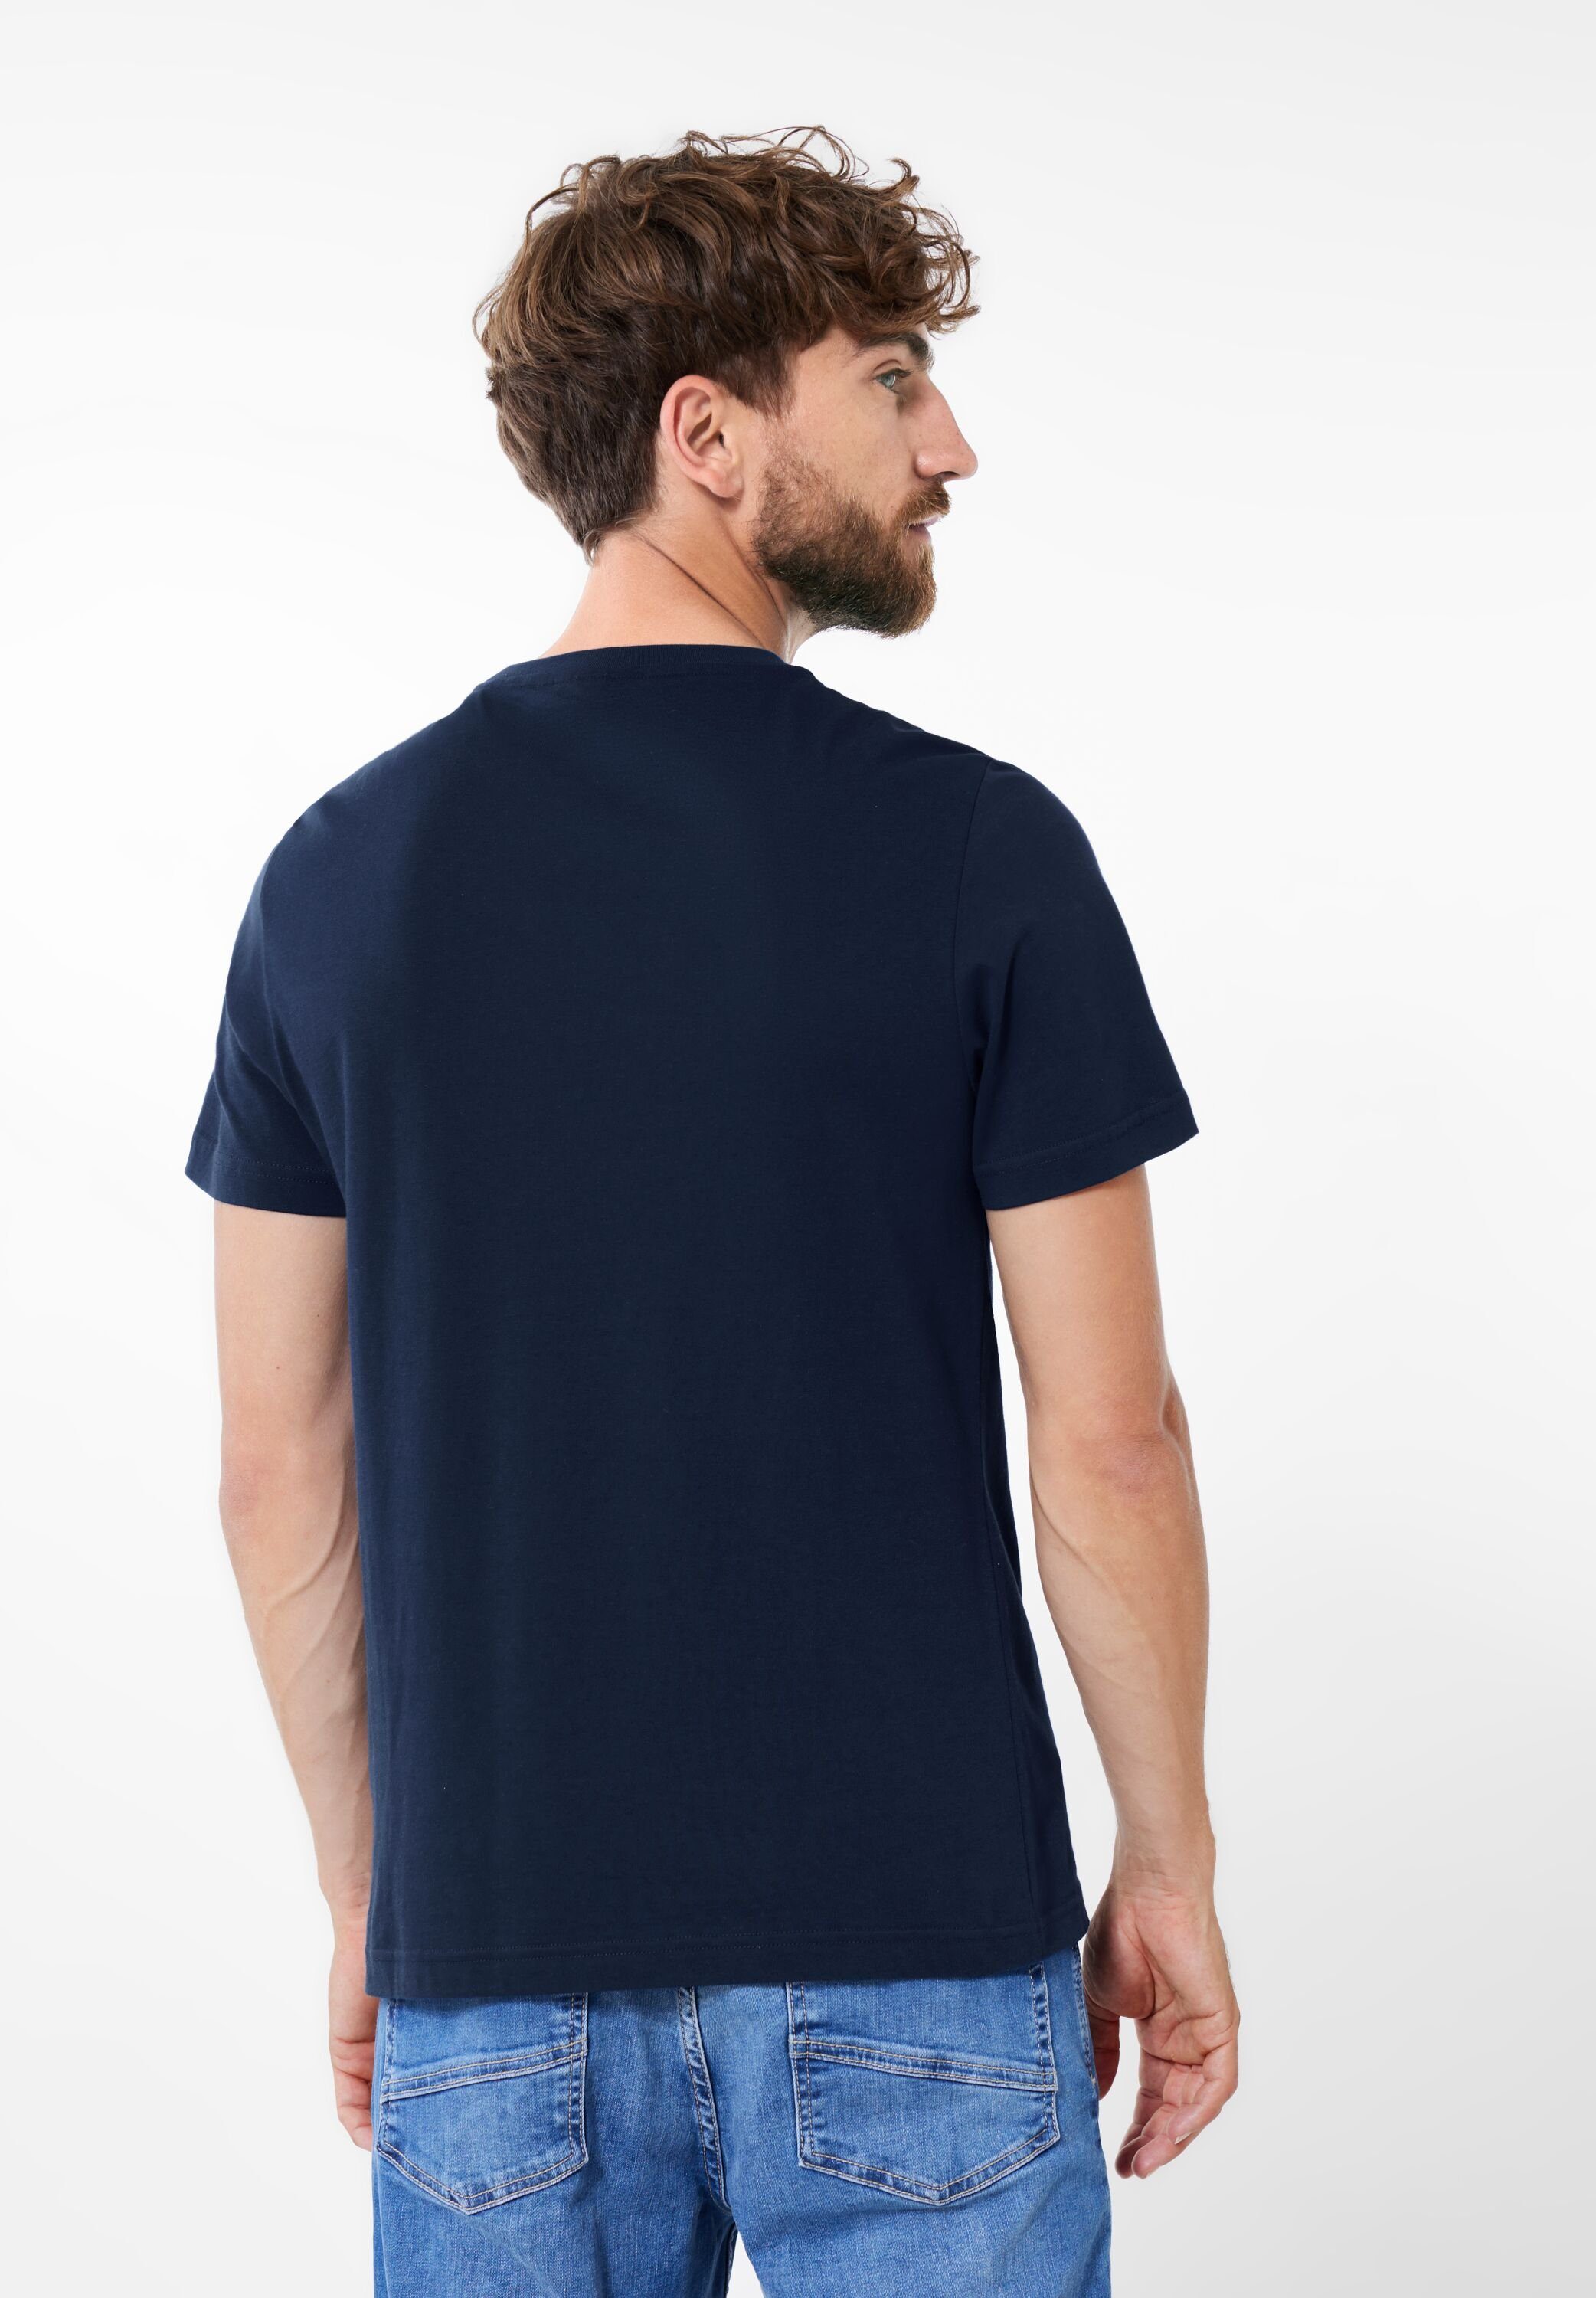 ONE MEN blue STREET T-Shirt navy